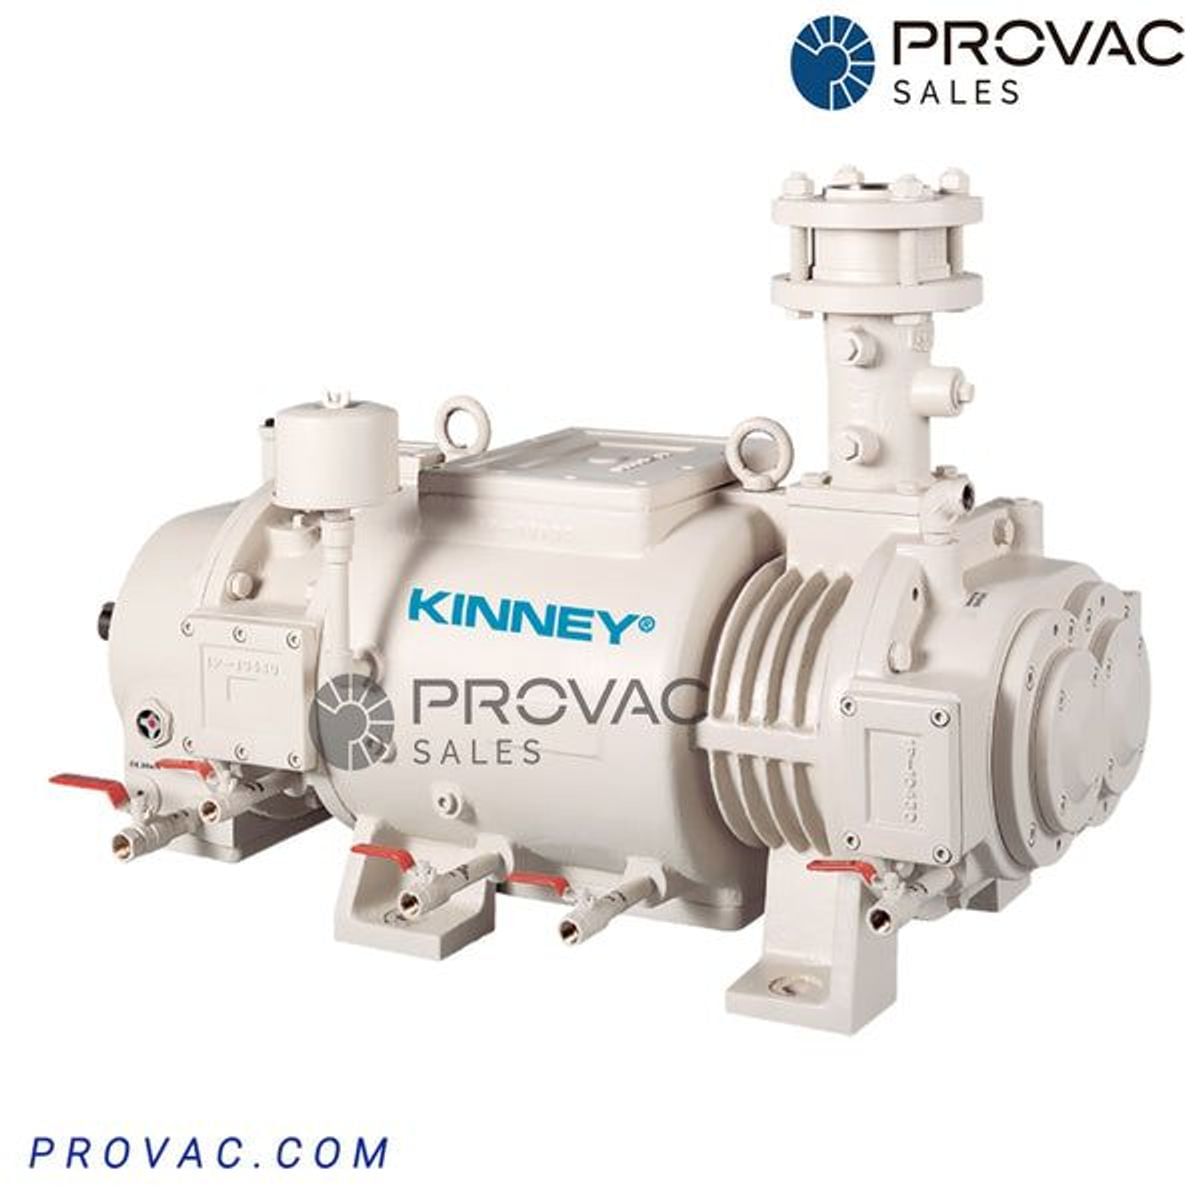 Kinney KDP 800 Dry Screw Vacuum Pump Image 1